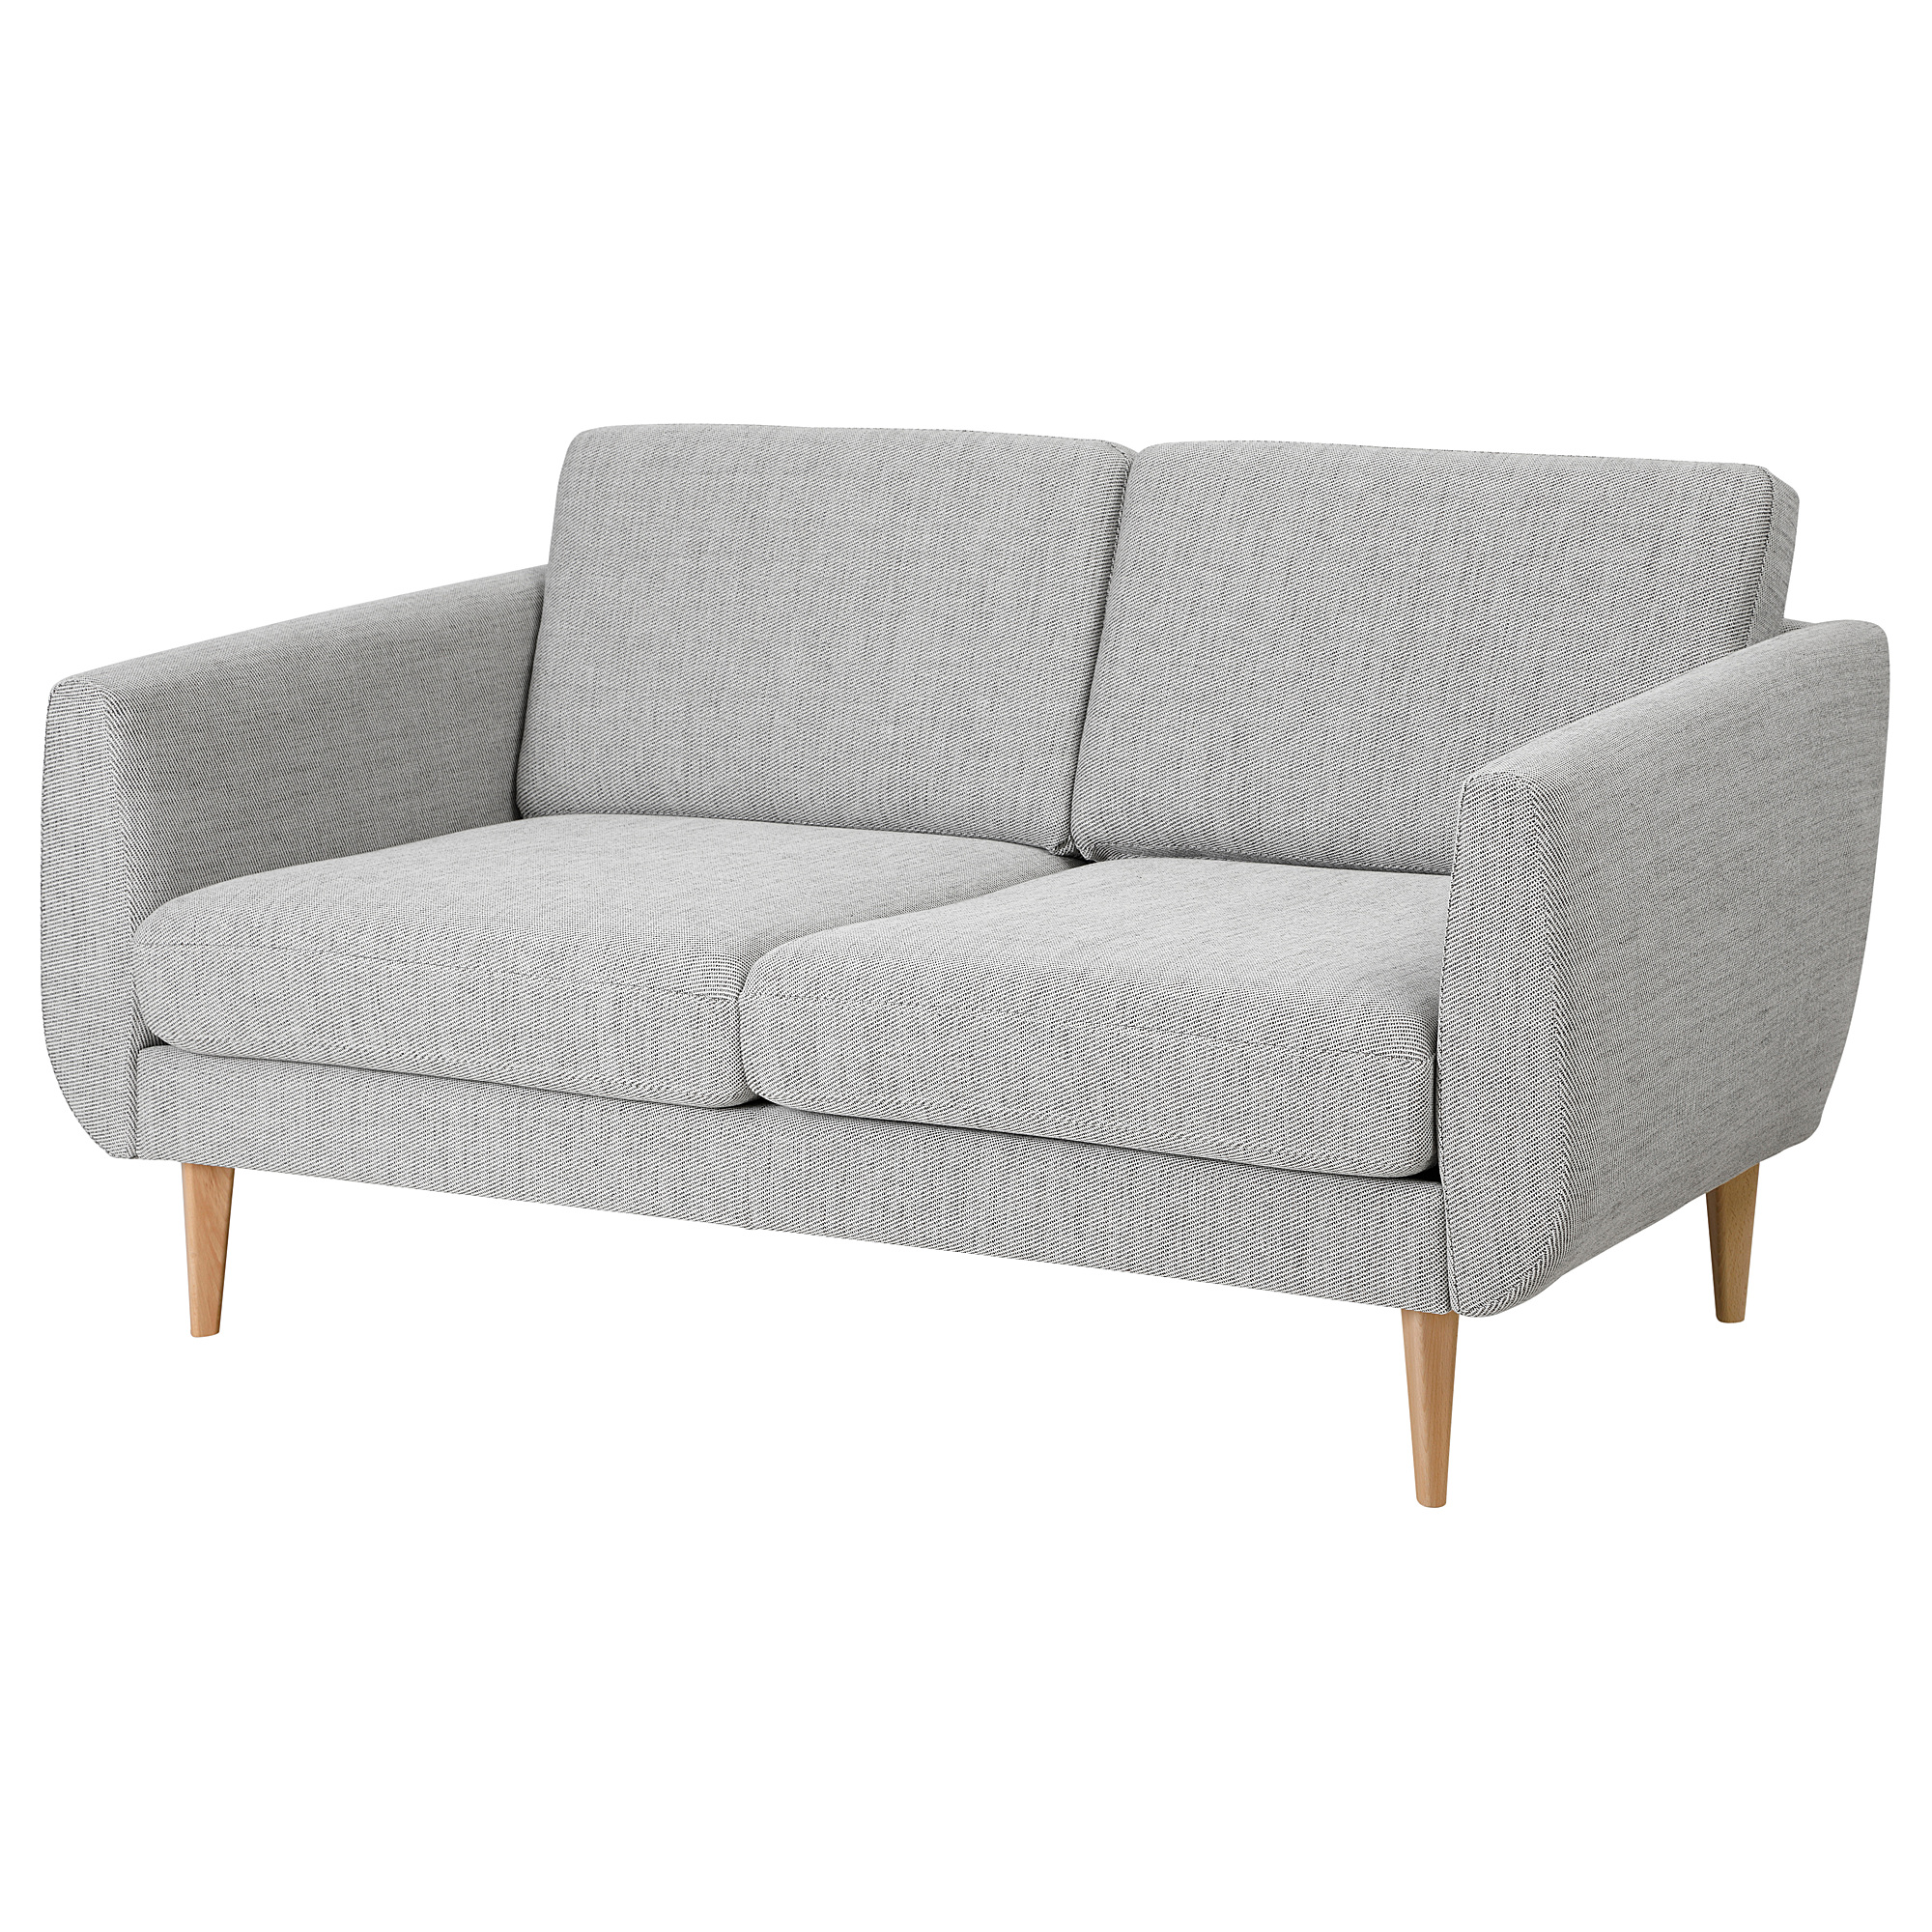 SMEDSTORP 2-seat sofa